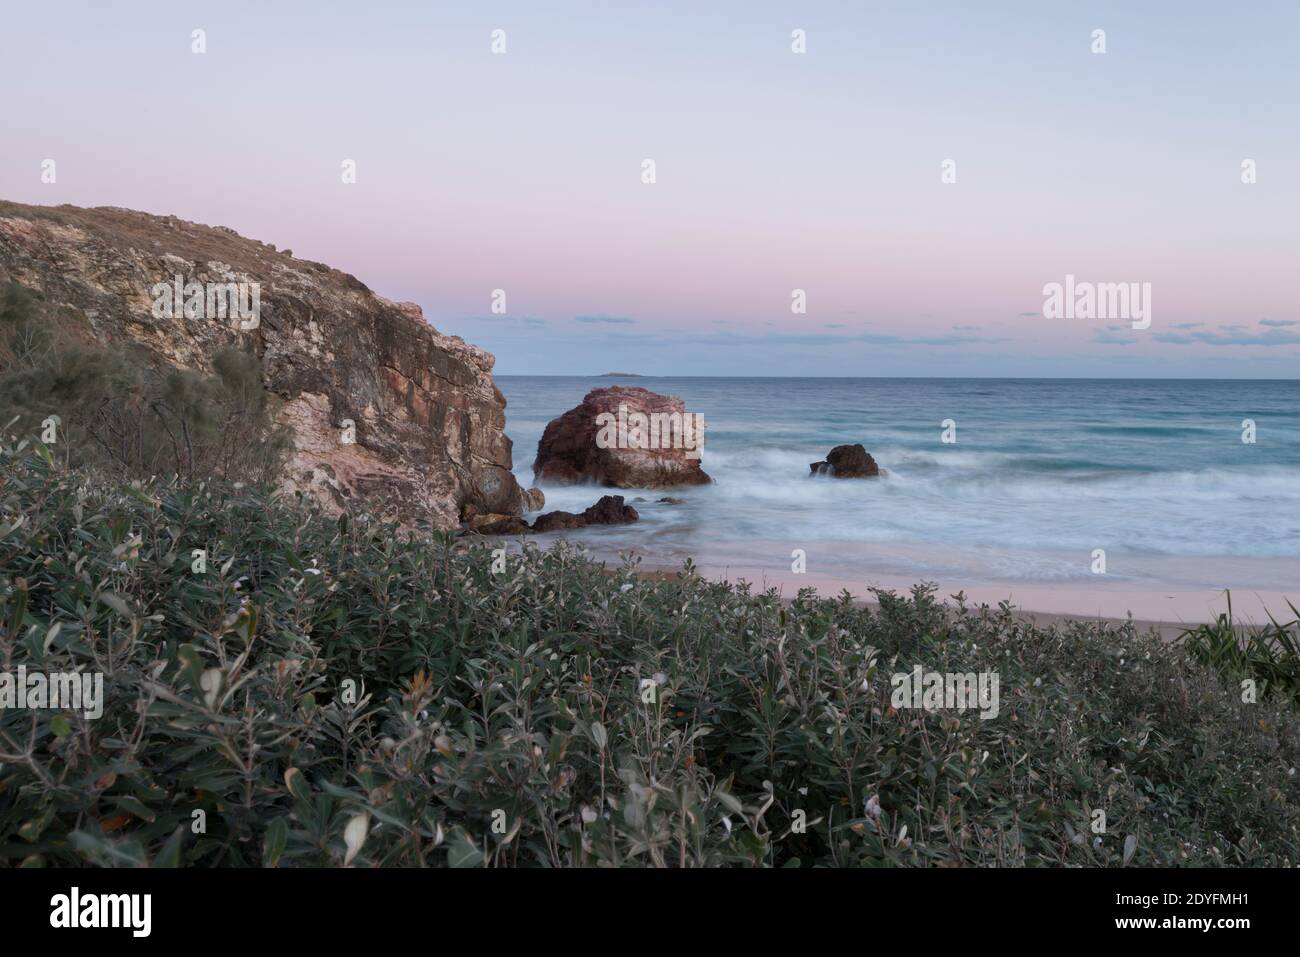 Paysage côtier avec falaises rocheuses et ciel pastel, scène typique de la côte est de l'Australie. Banque D'Images